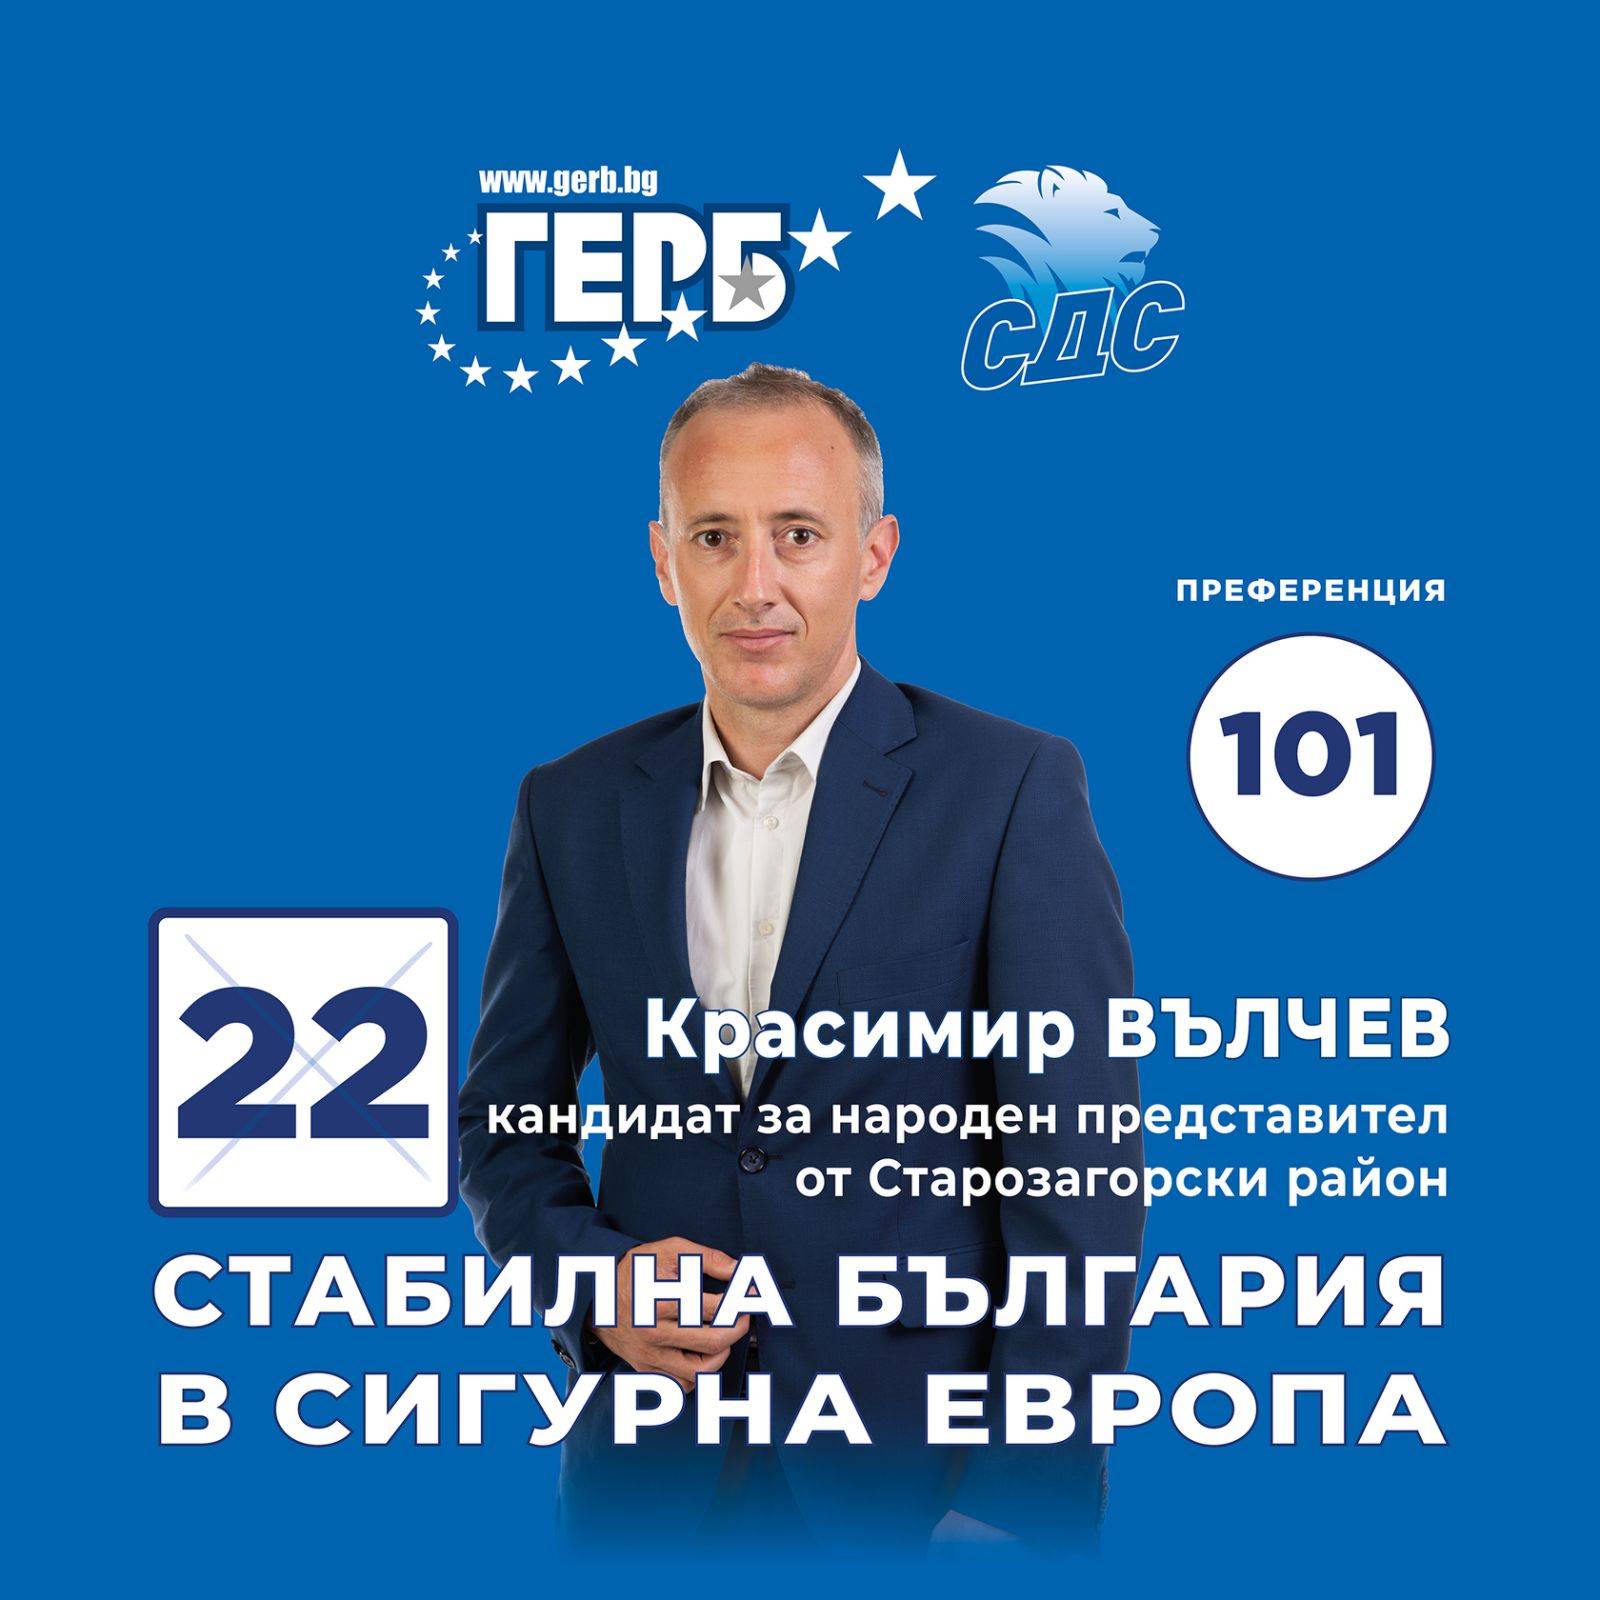  Красимир Вълчев, лидер на листата на ГЕРБ – Съюз на демократичните сили в Старозагорски регион: Всички плащаме 